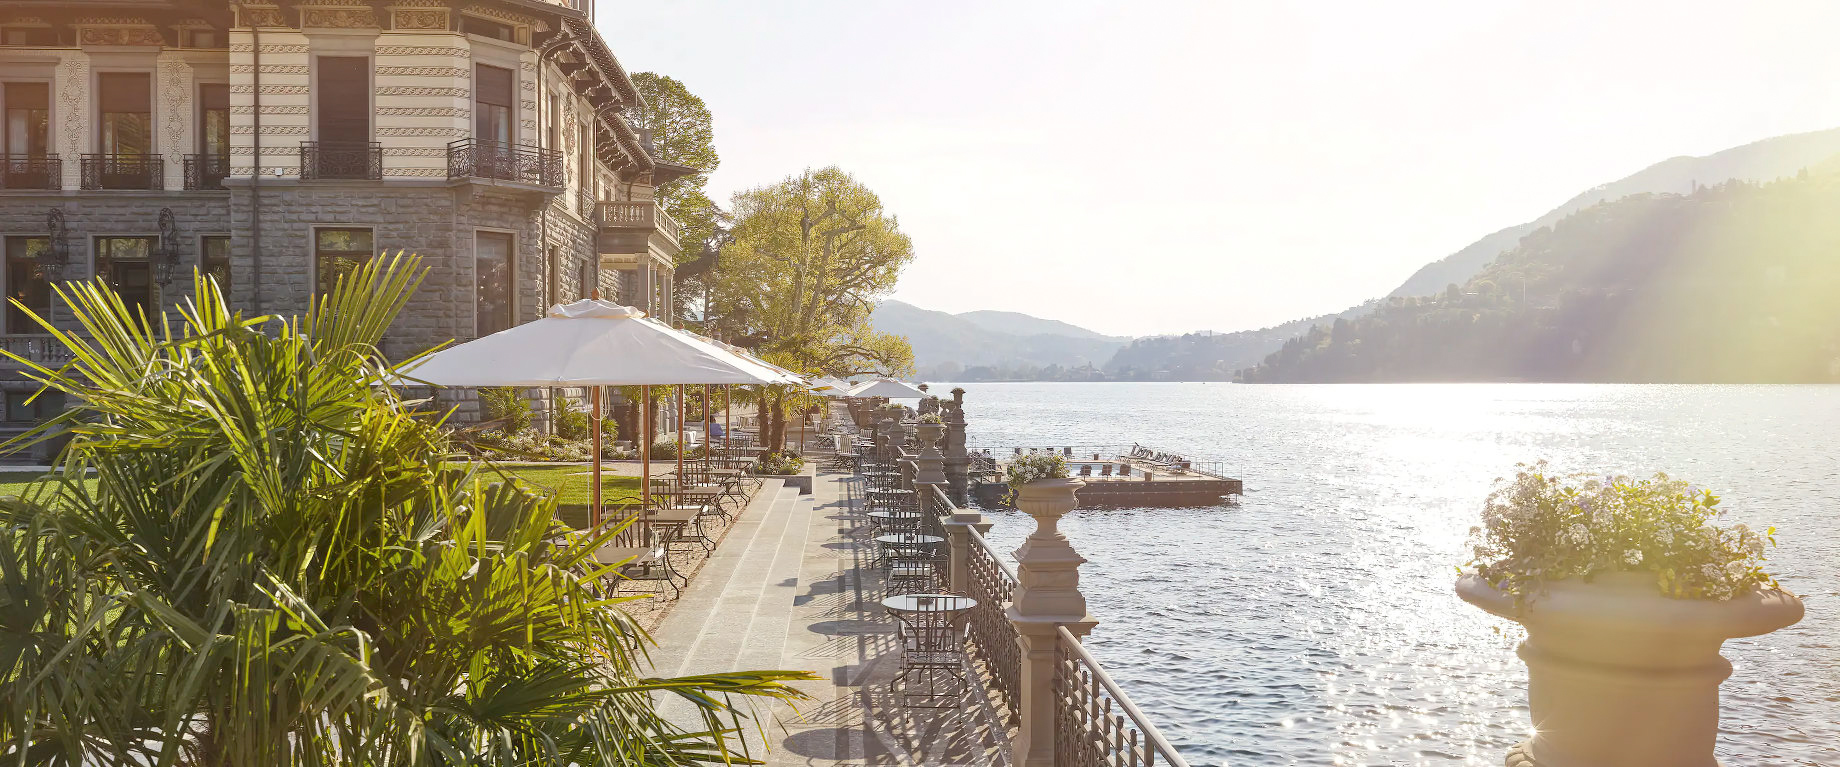 Mandarin Oriental, Lago di Como Hotel – Lake Como, Italy – CO.MO Bar and Bistrot Terrace